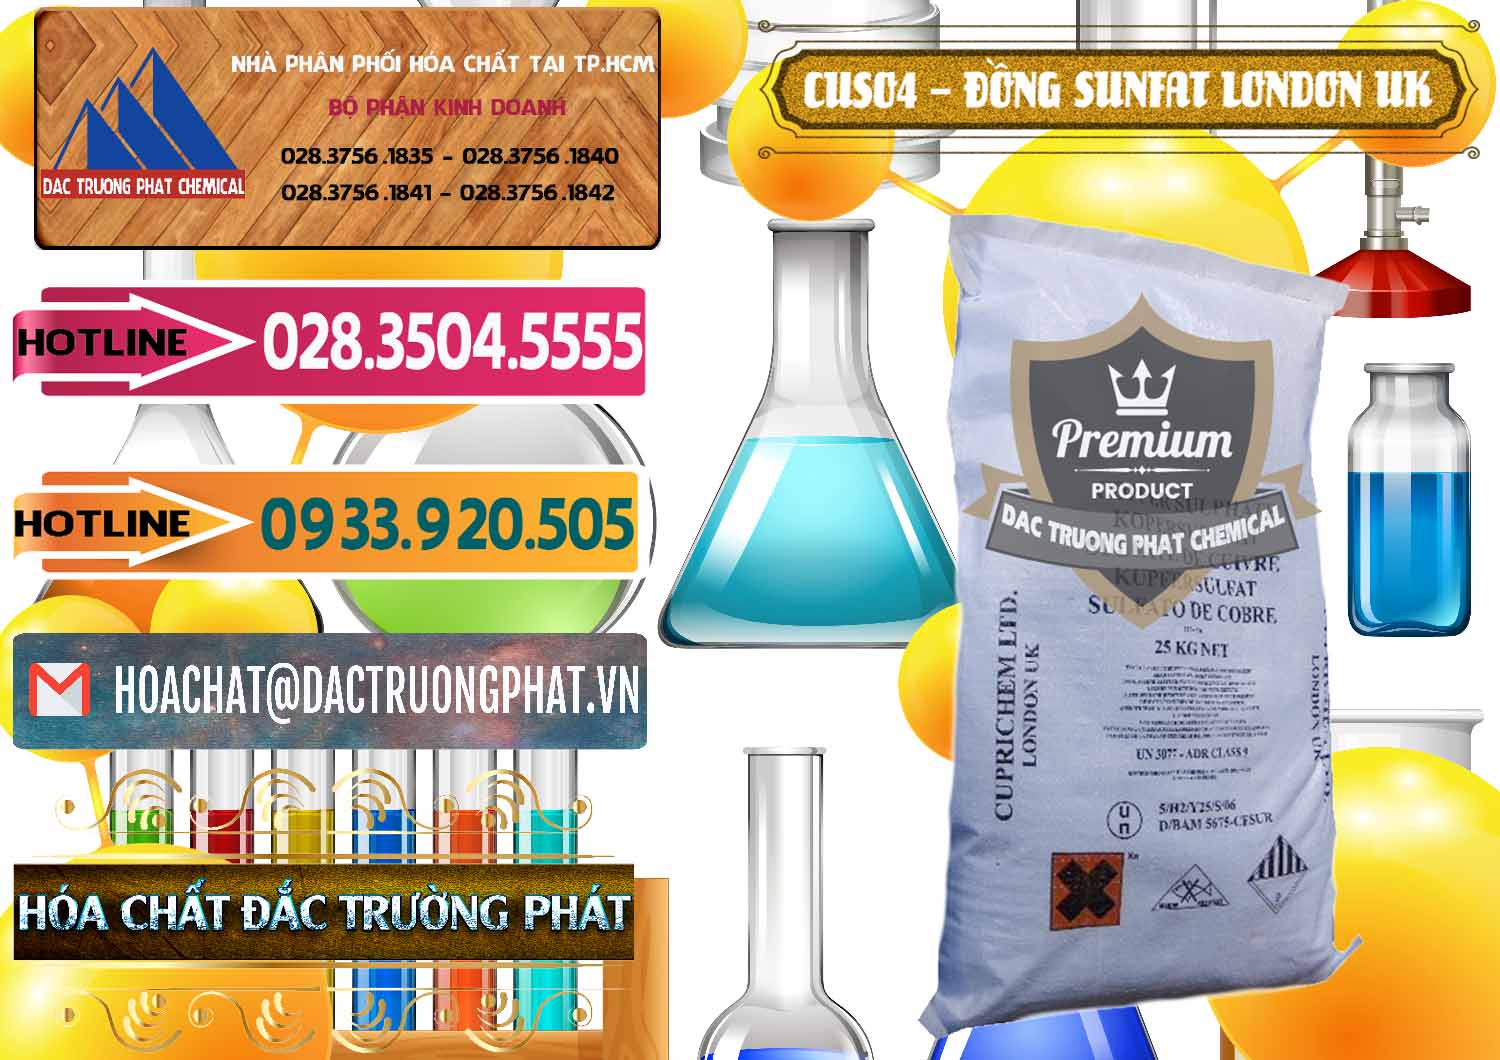 Công ty bán - phân phối CuSO4 – Đồng Sunfat Anh Uk Kingdoms - 0478 - Công ty kinh doanh và cung cấp hóa chất tại TP.HCM - dactruongphat.vn